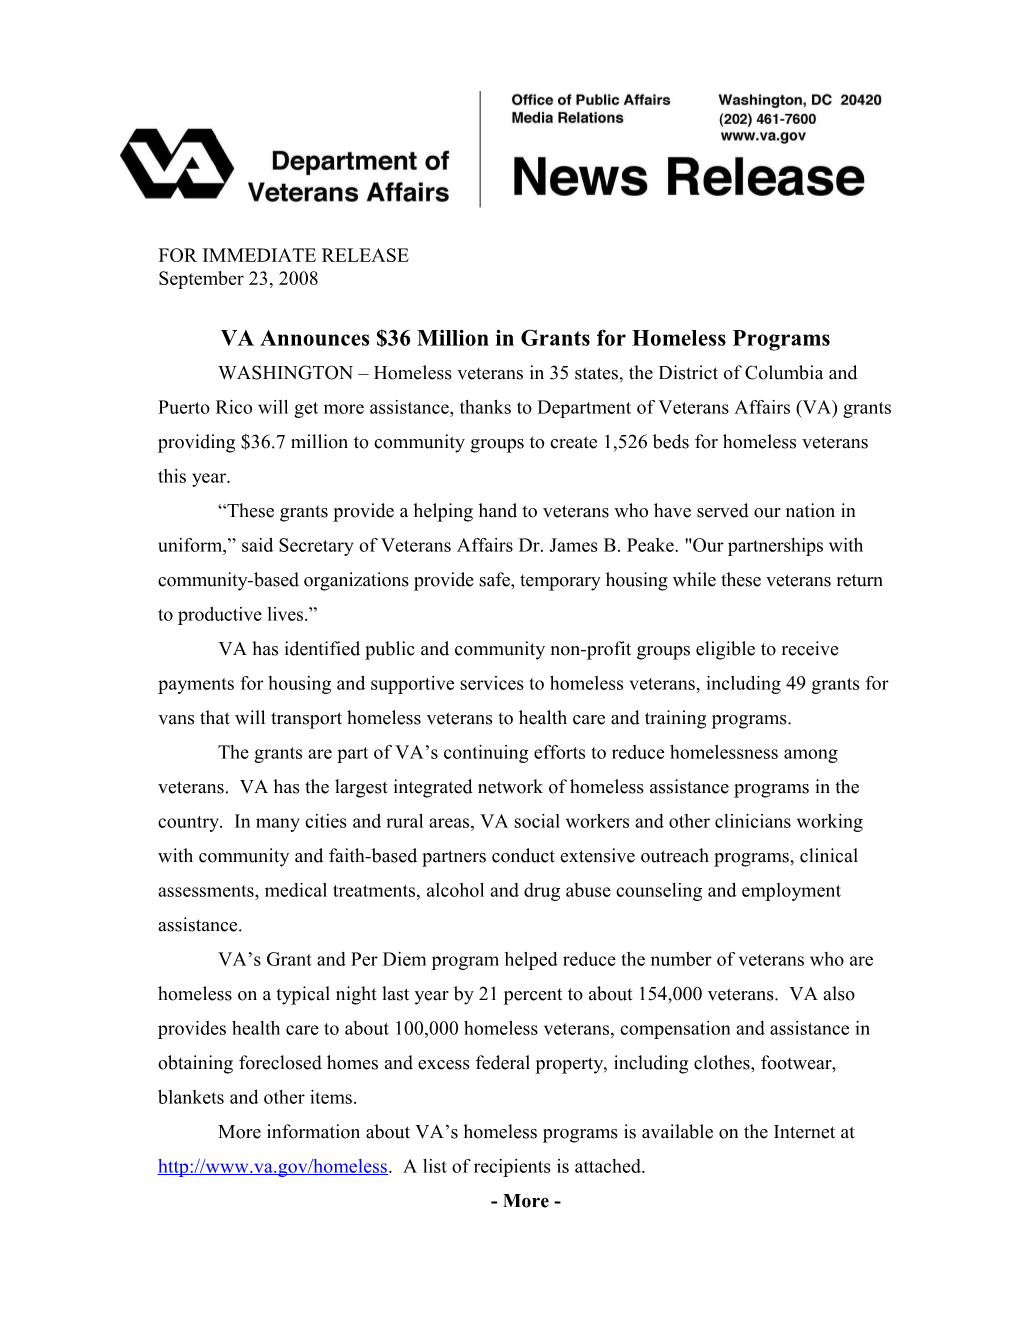 VA Announces $36 Million in Grants for Homeless Programs